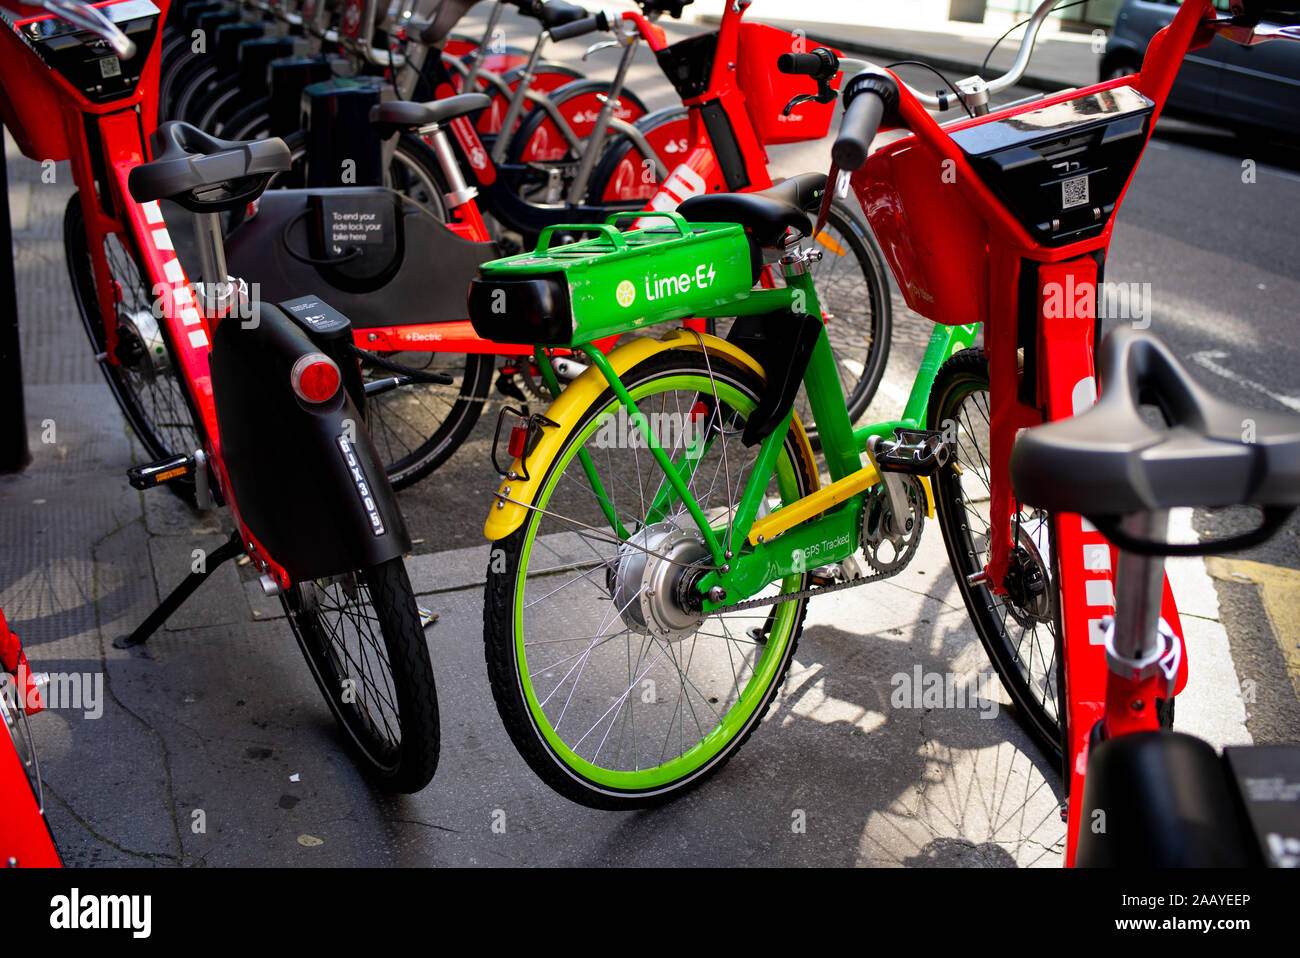 Eine Kalk-E und Springen elektrische Hilfe Zyklus Sharing Station mit Fahrrädern, in der mit den lebendigen Farben, die sich in den frühen Morgen Sonne abgestellt Stockfoto